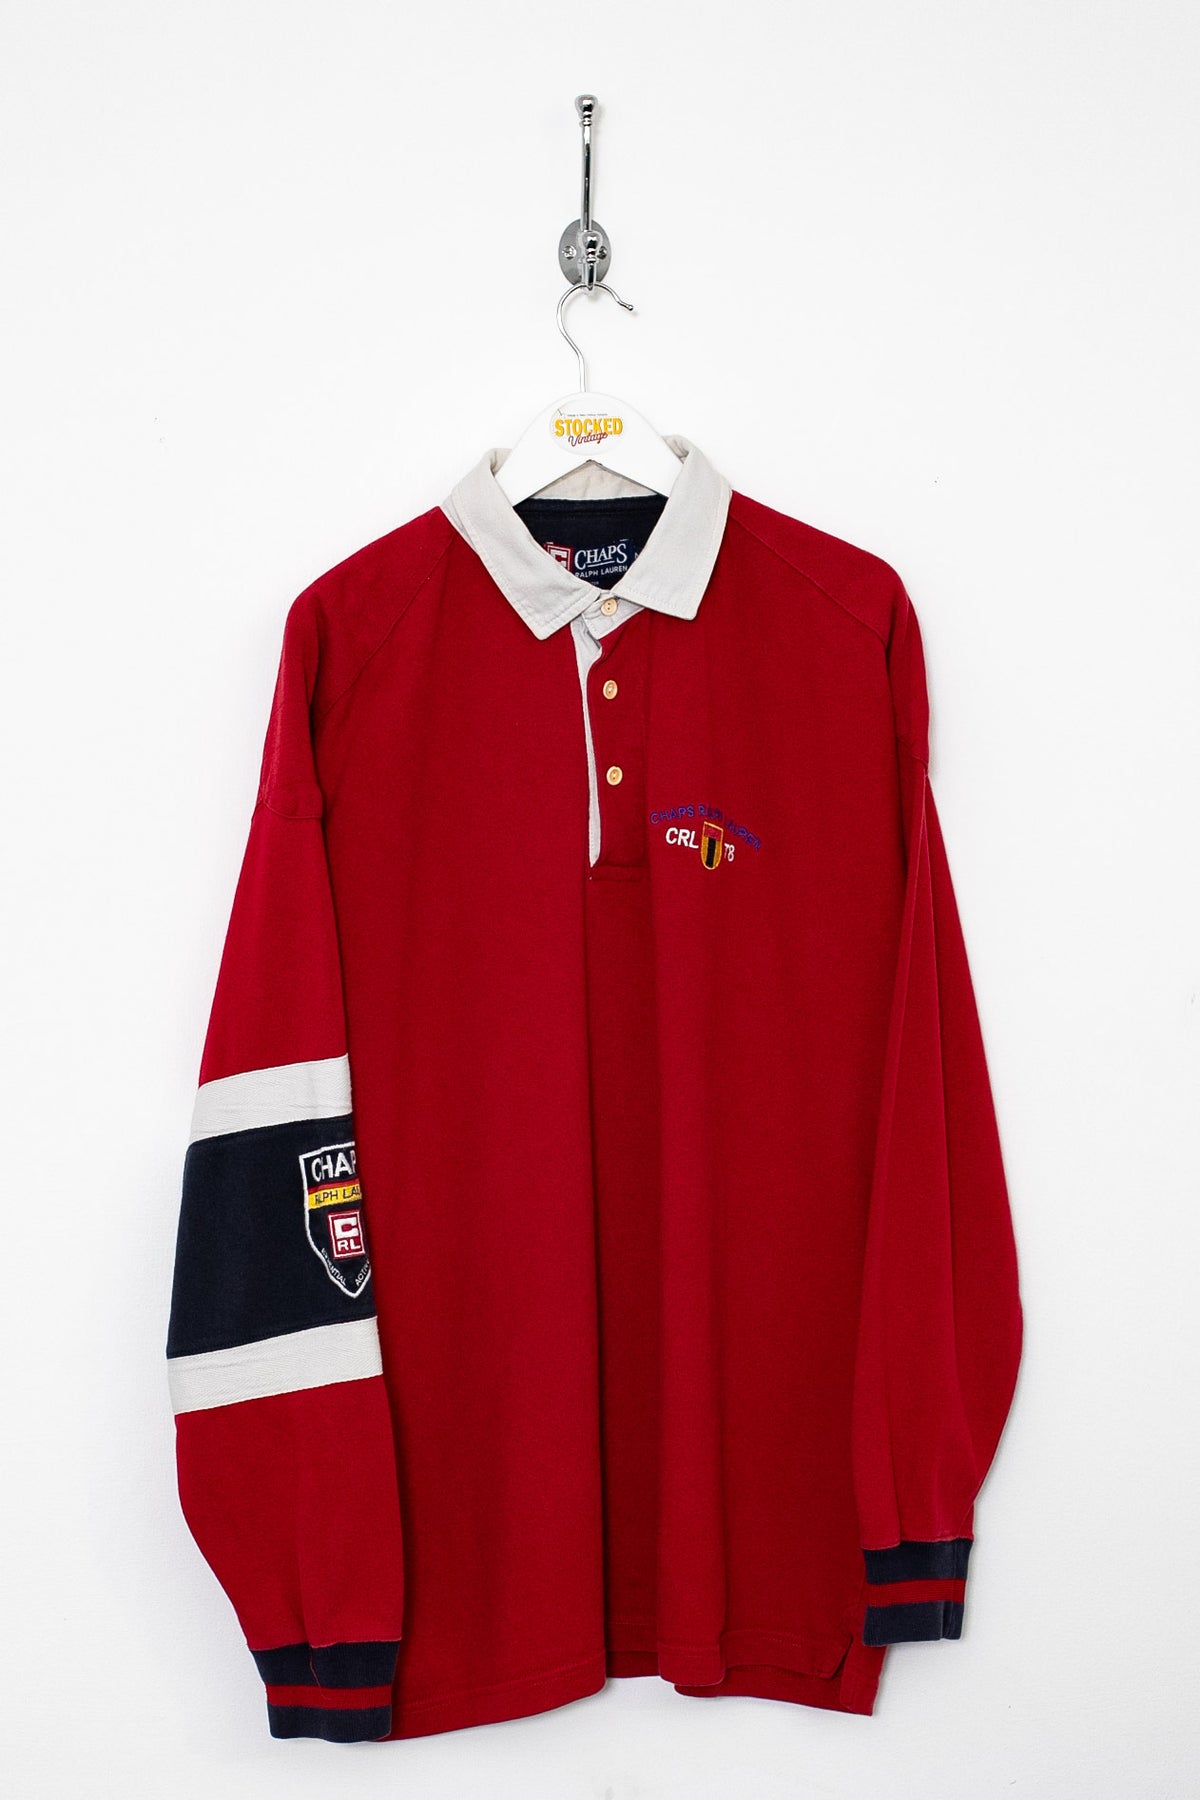 90s Ralph Lauren Chaps Rugby Shirt (L)